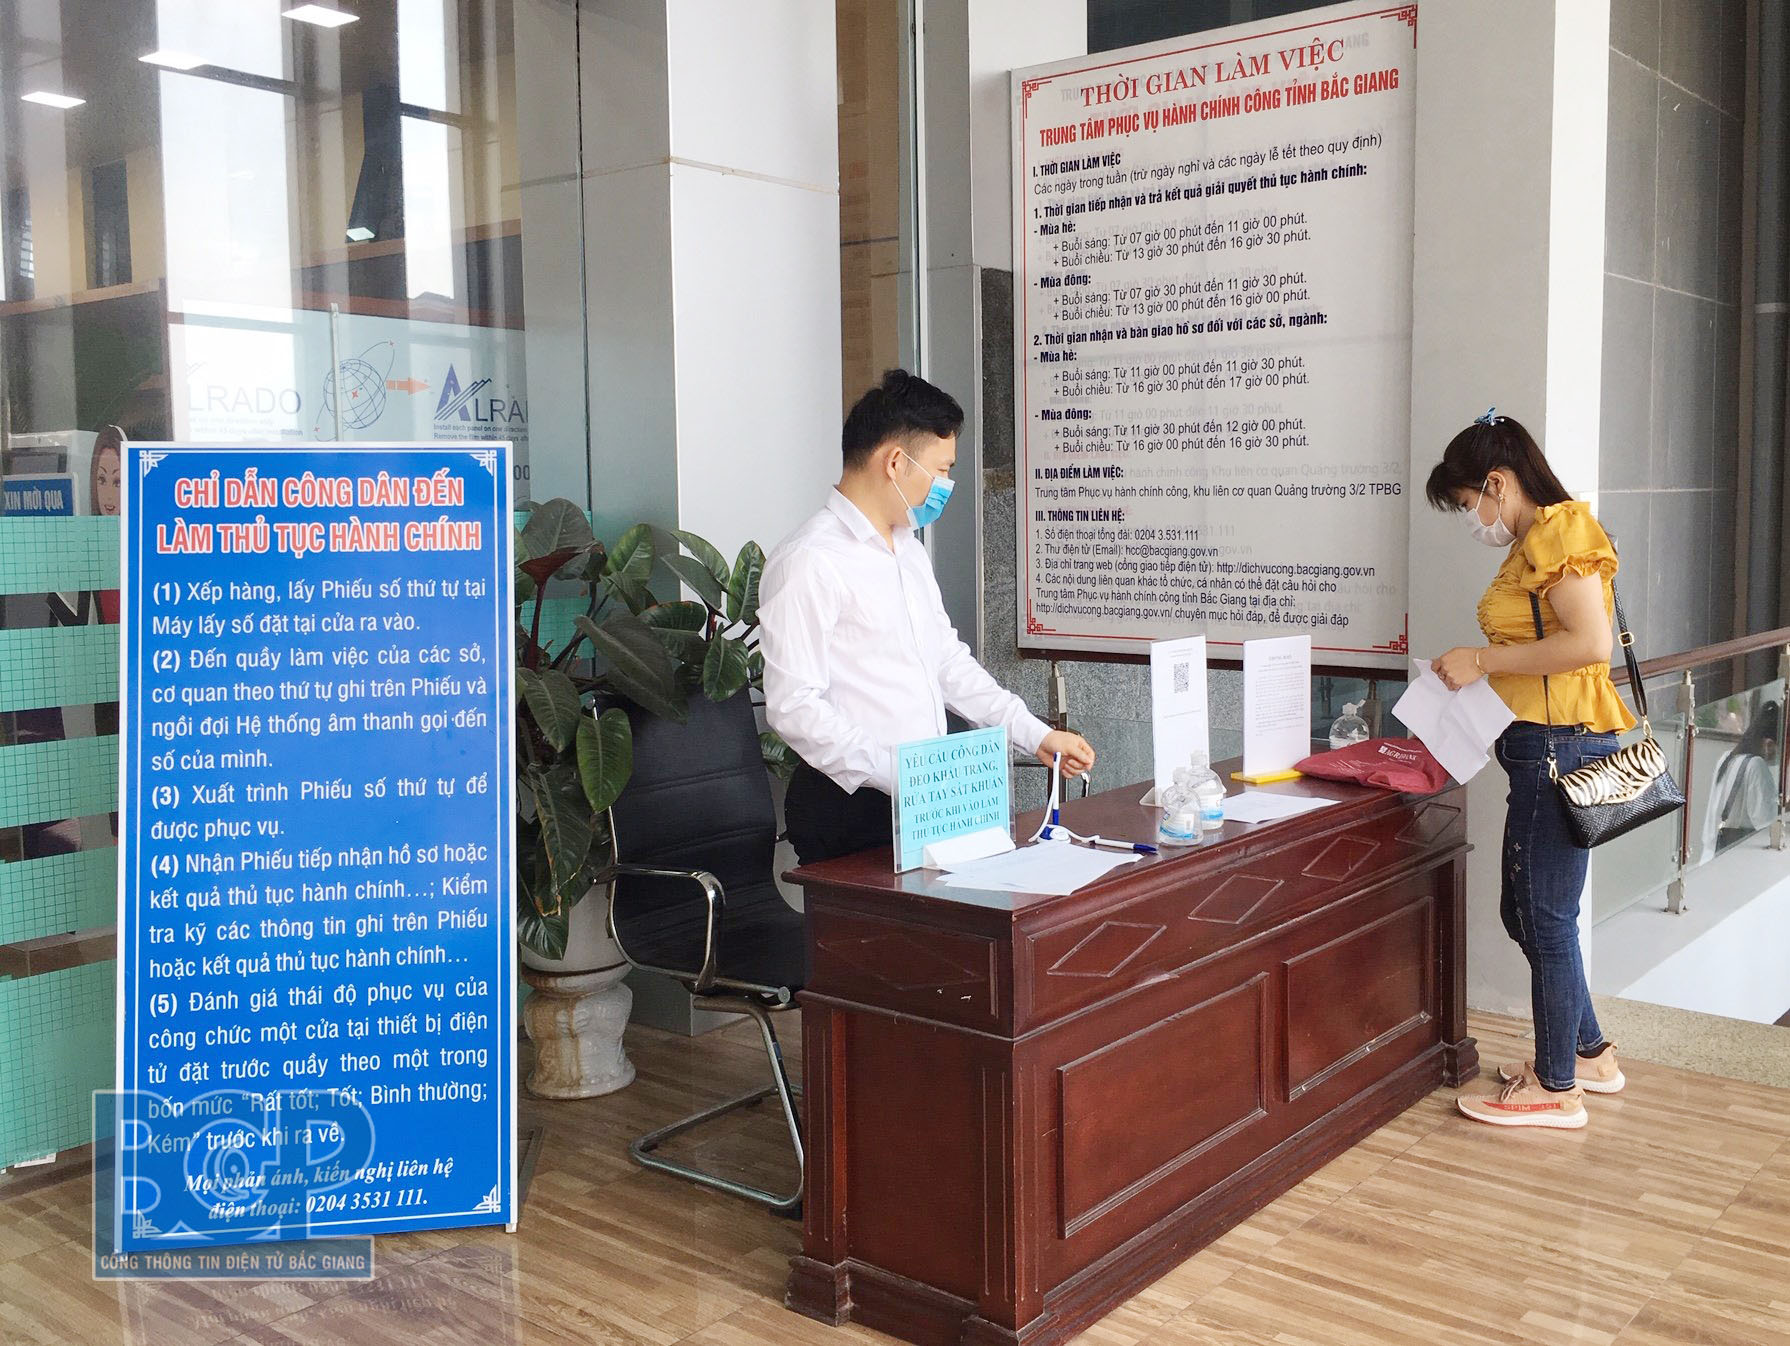 Trung tâm Phục vụ hành chính công tỉnh Bắc Giang tích cực phòng, chống dịch Covid-19